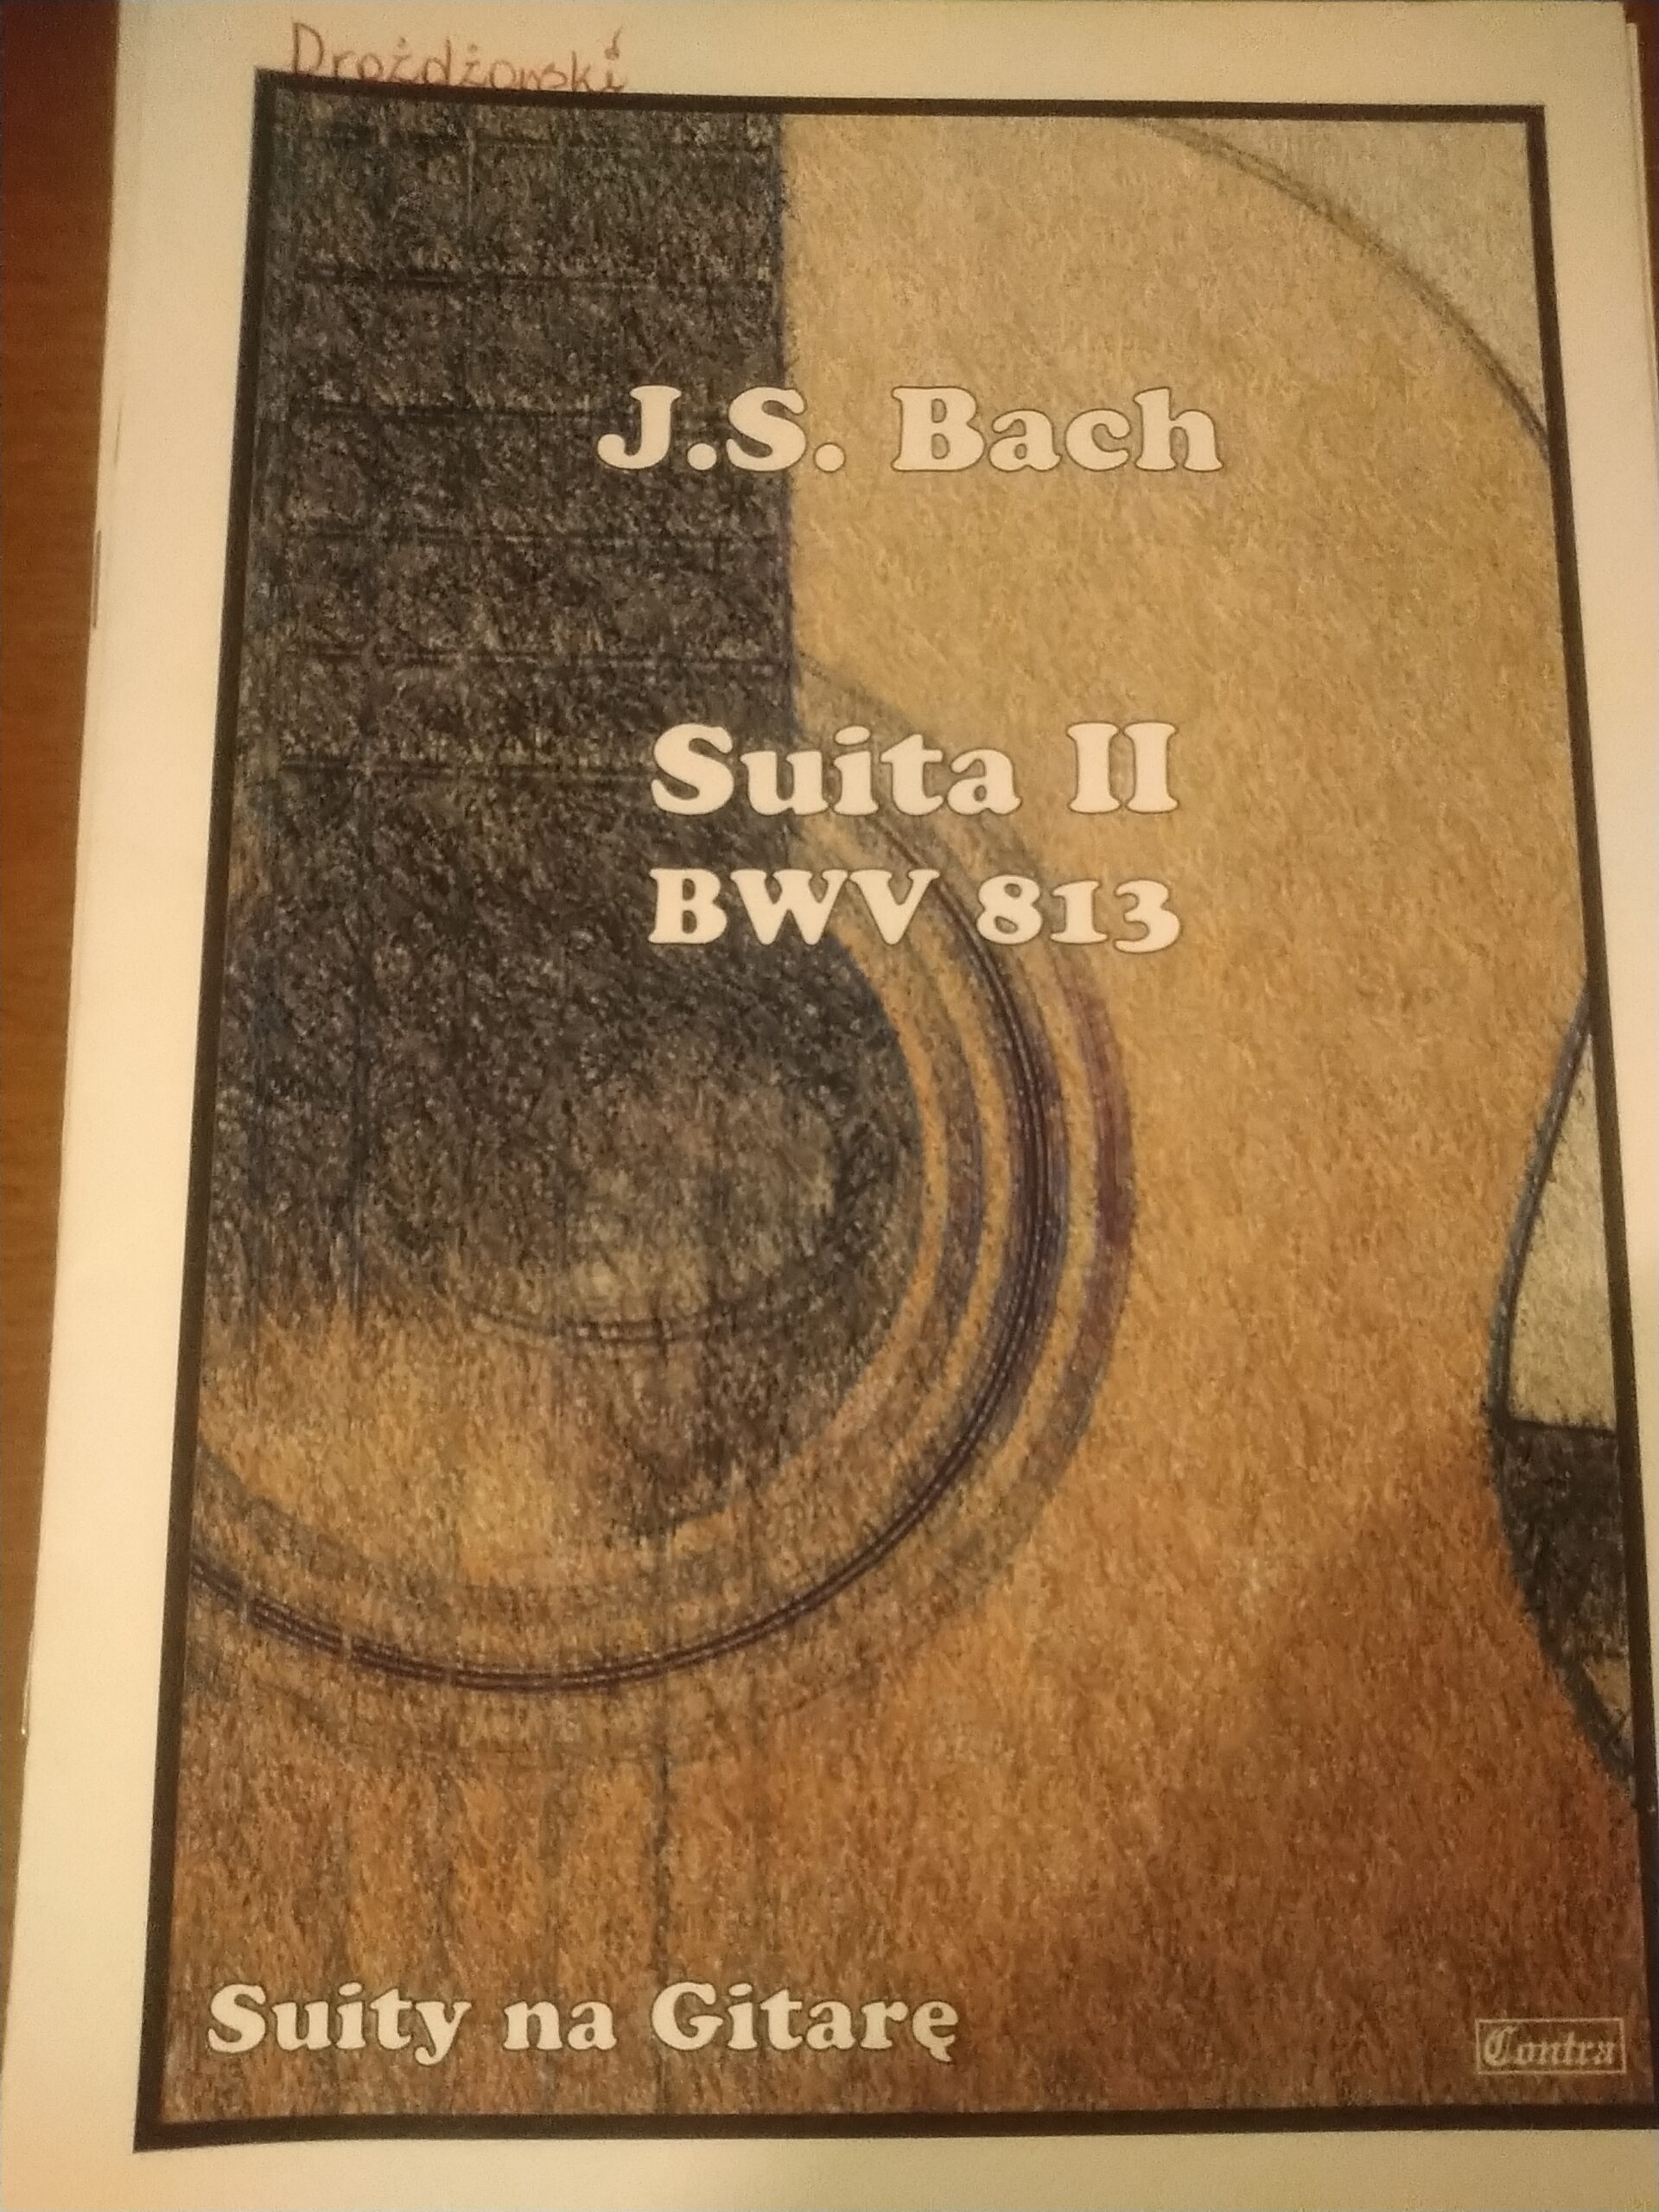 Mirosław Drożdżowski -Suita II BWV 813 J.S.Bach